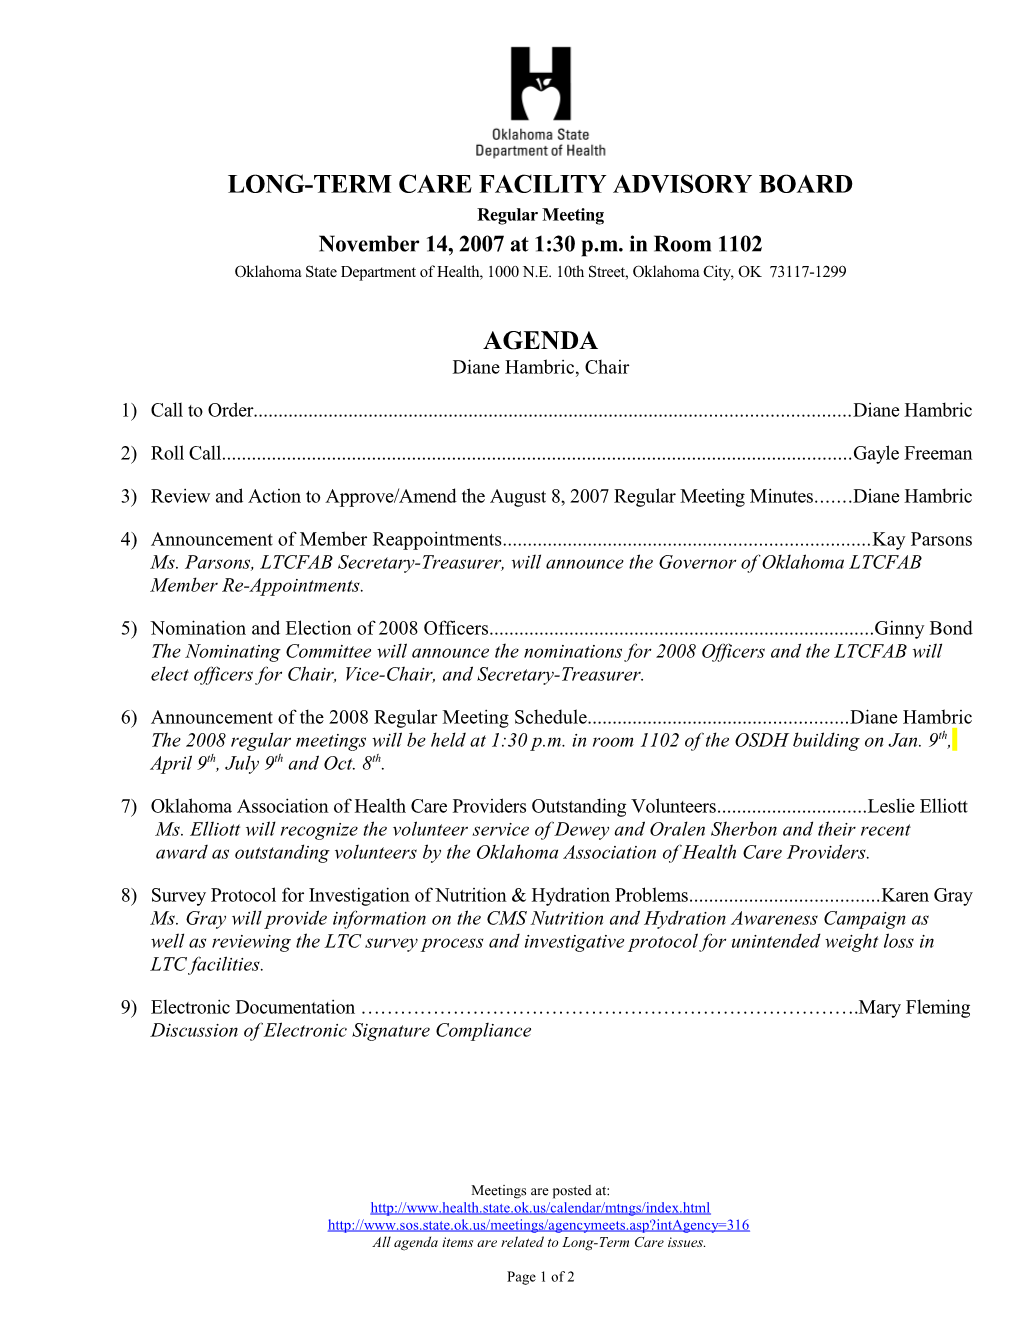 LTC Facility Advisory Board Agenda